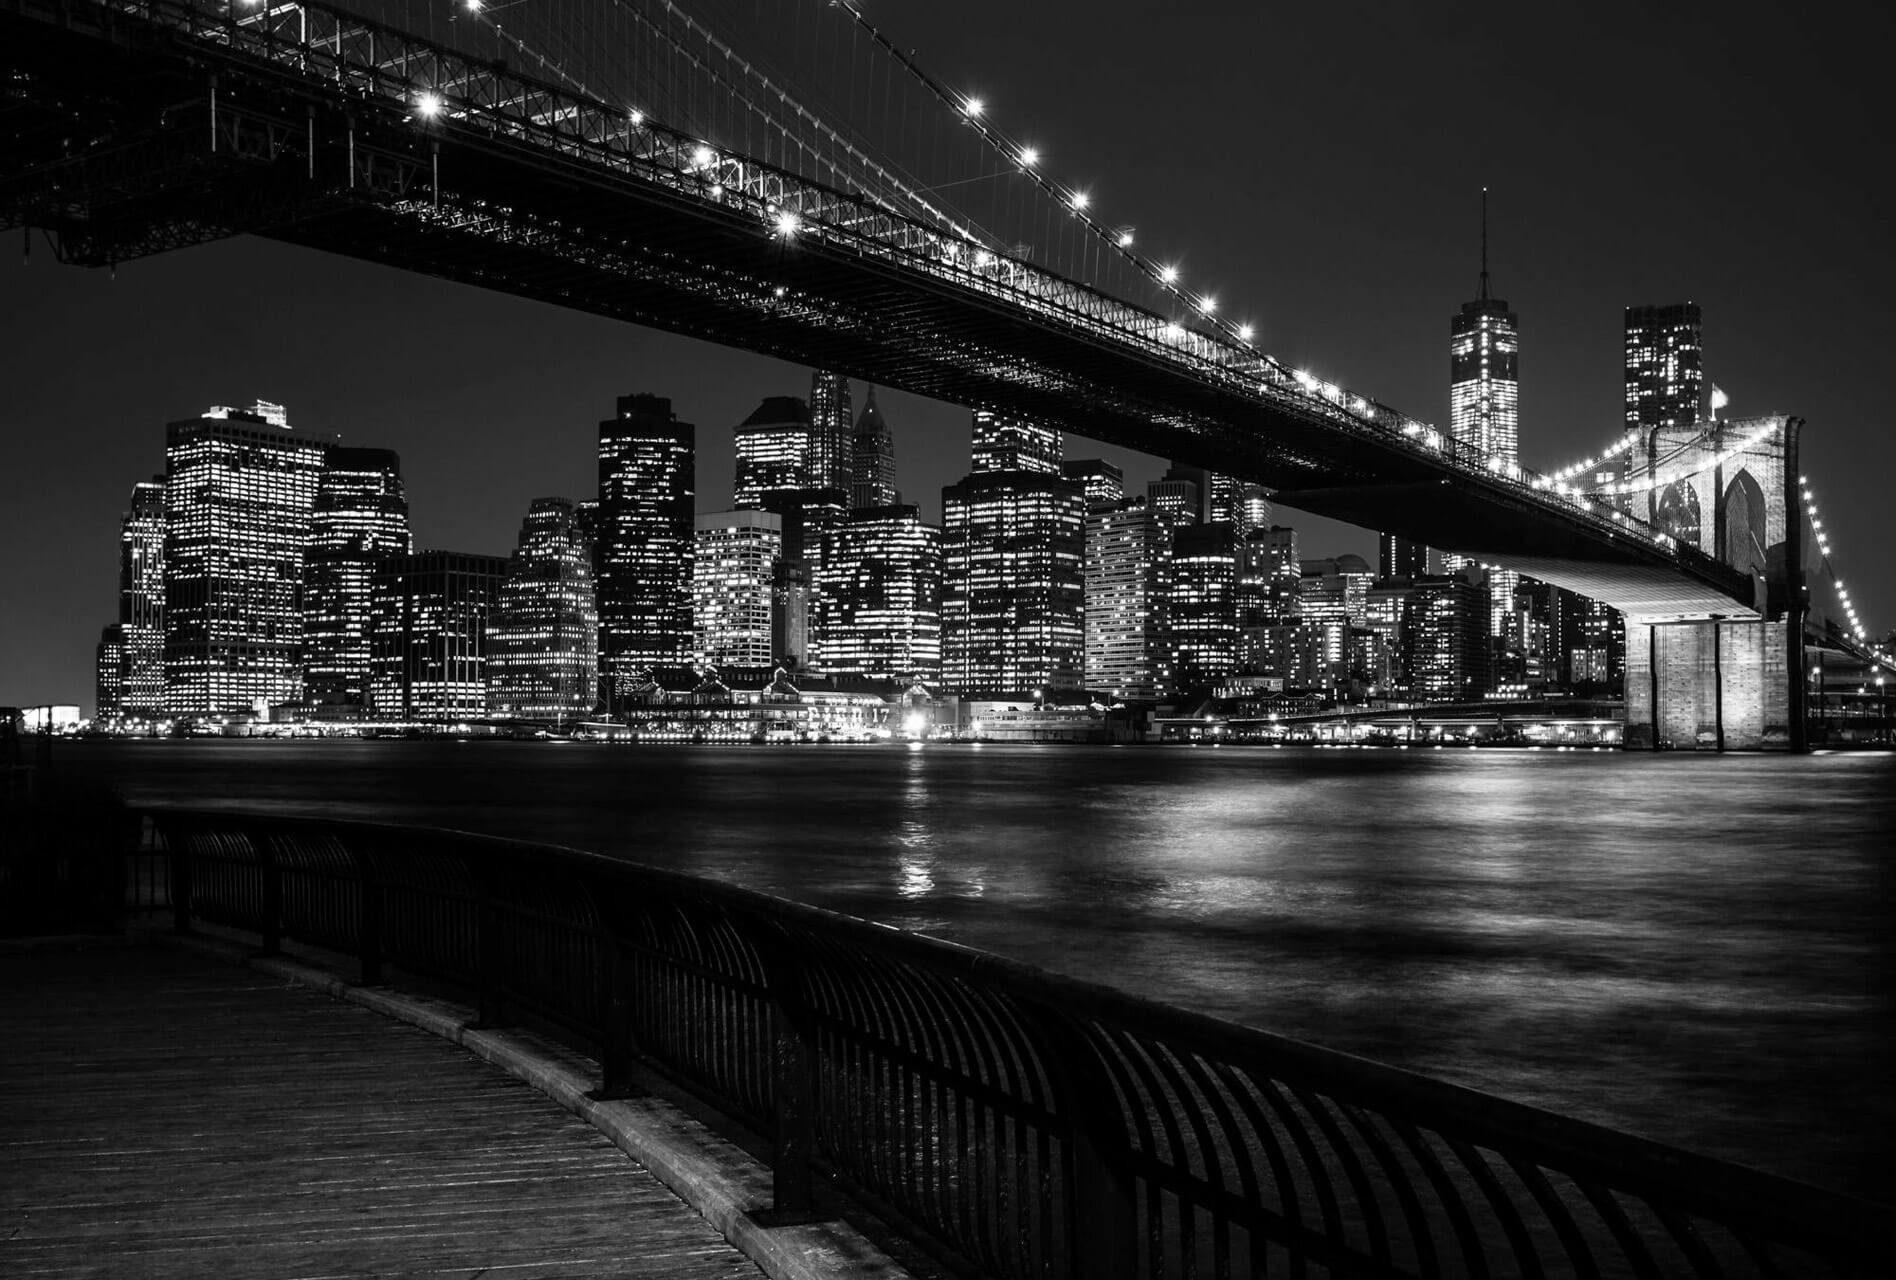 KUNSTLOFT Vliestapete Brooklyn Bridge by Night, leicht glänzend, lichtbeständige Design Tapete